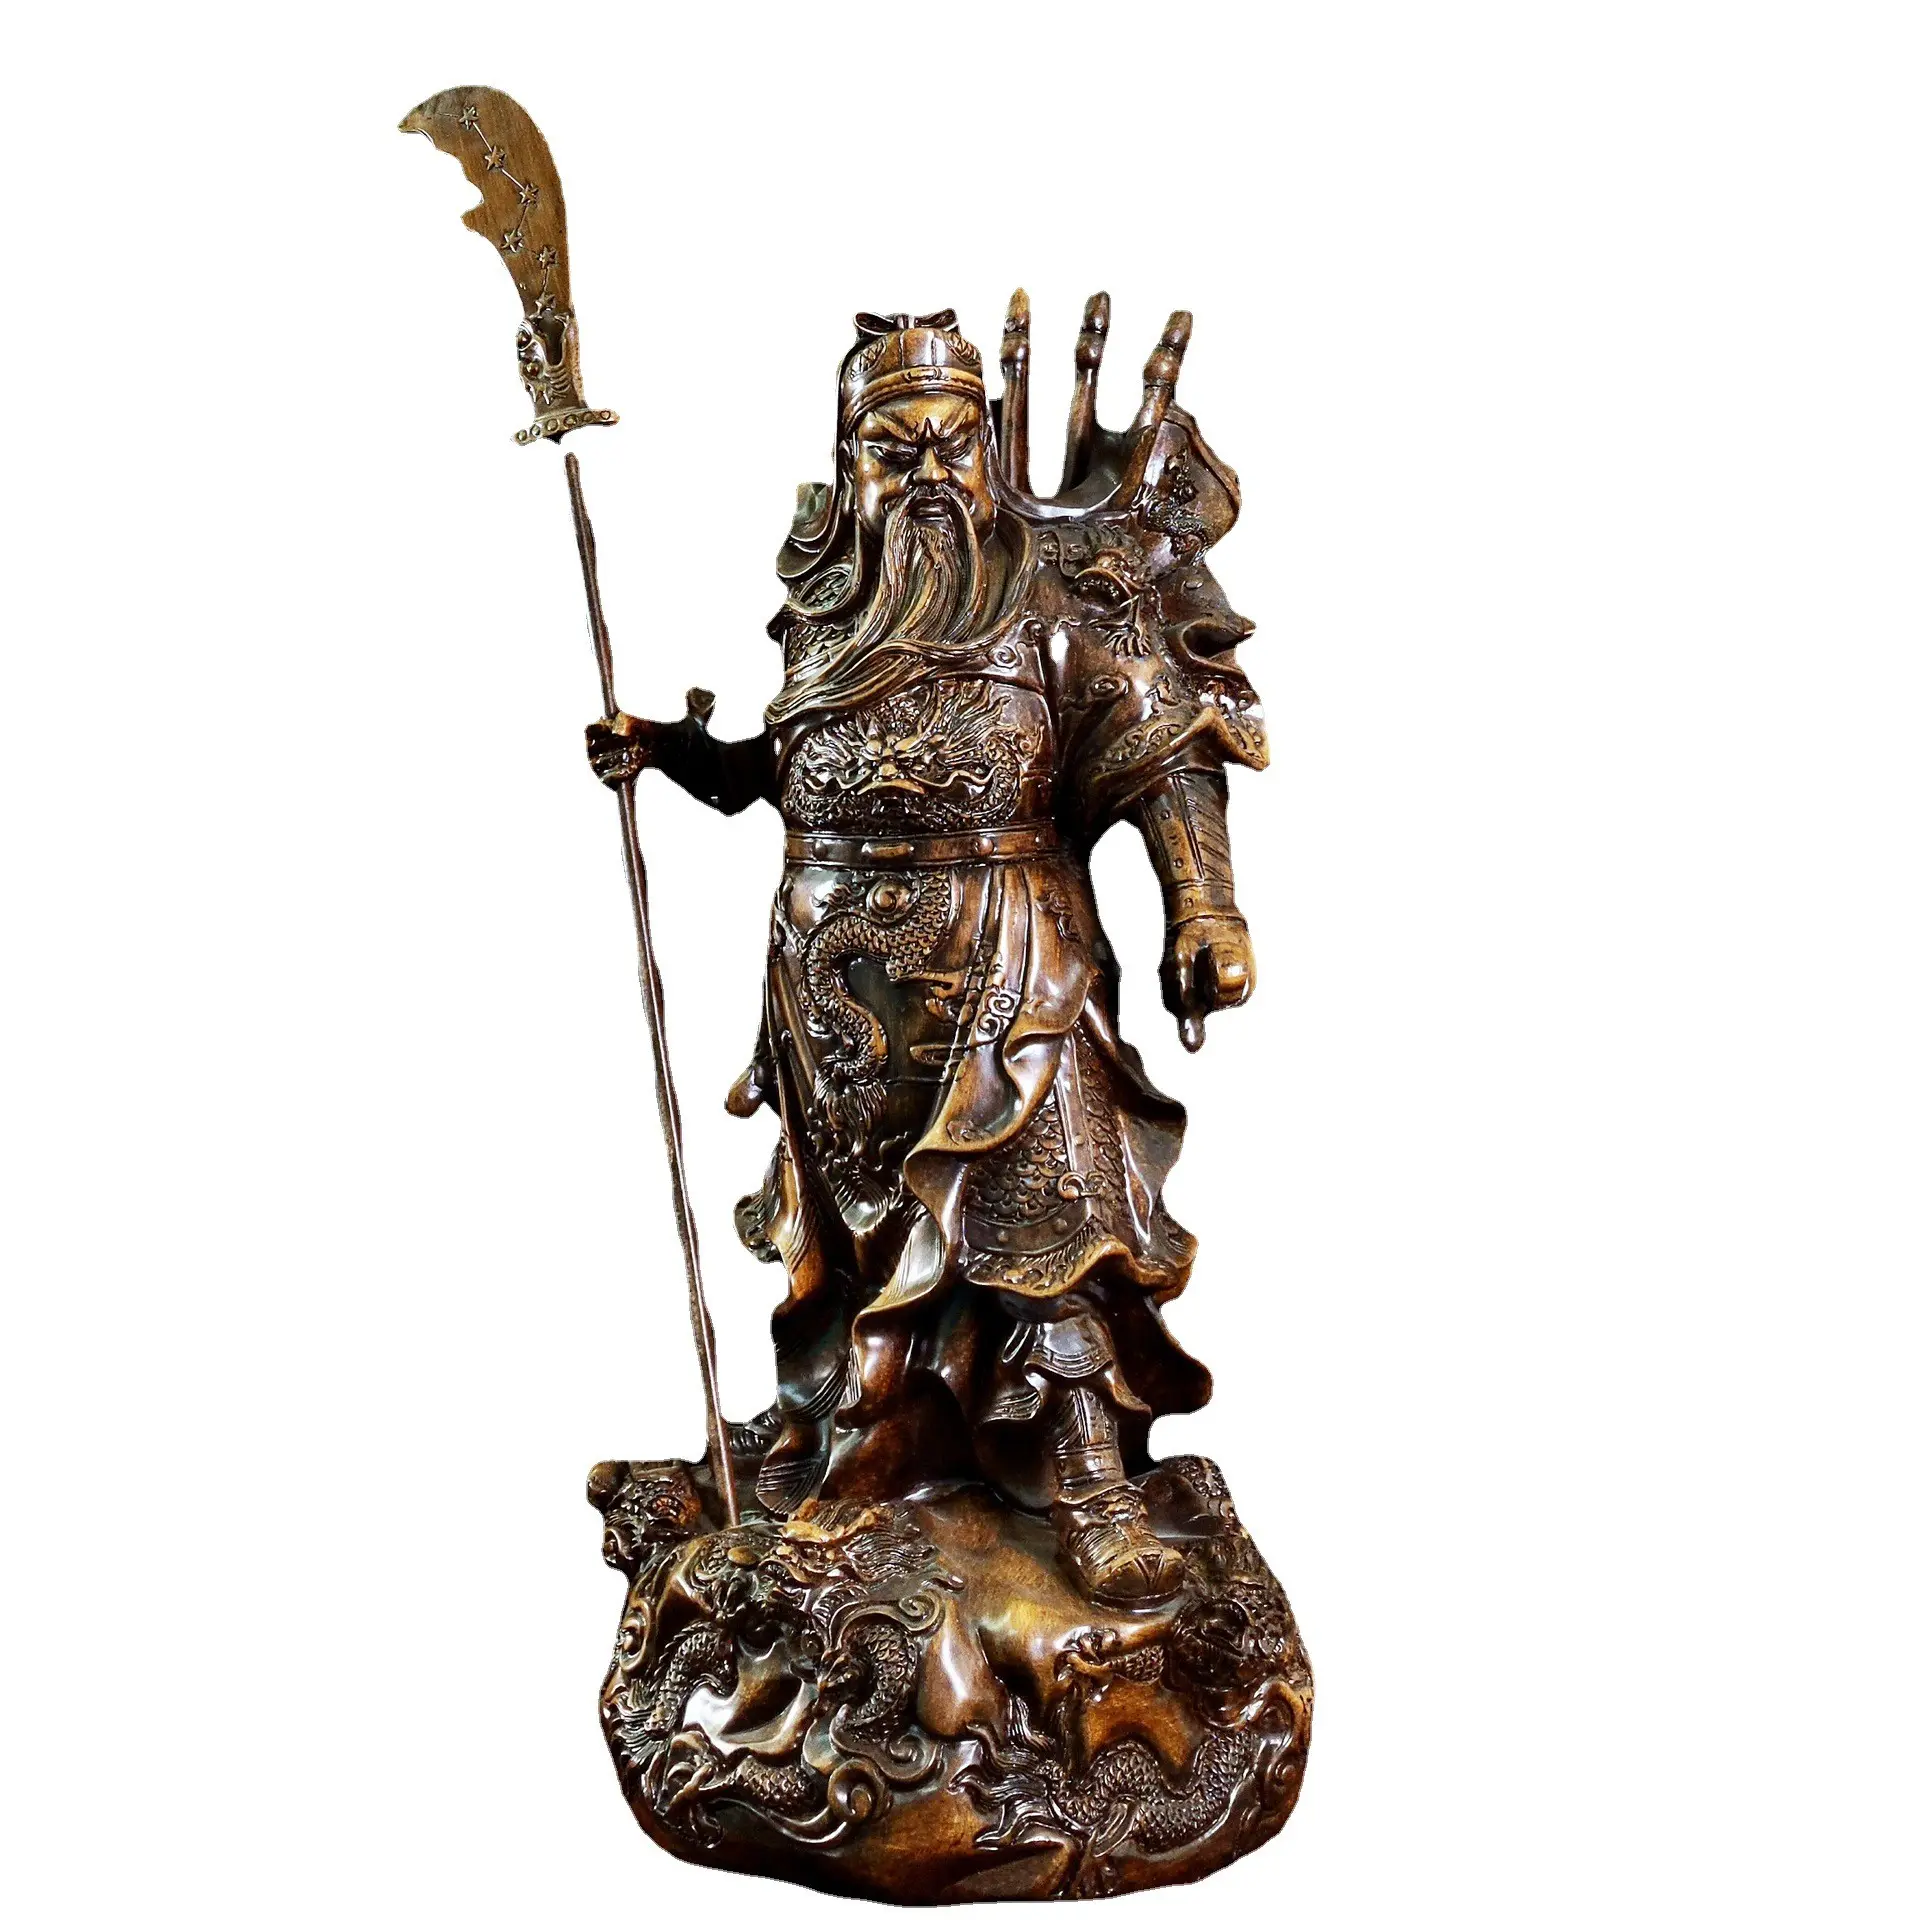 Artigianato in resina dio della ricchezza scultura in legno statua di Buddha decorazioni Guan Yu statua di Guan Yu ornamenti per Statue con faccia rossa